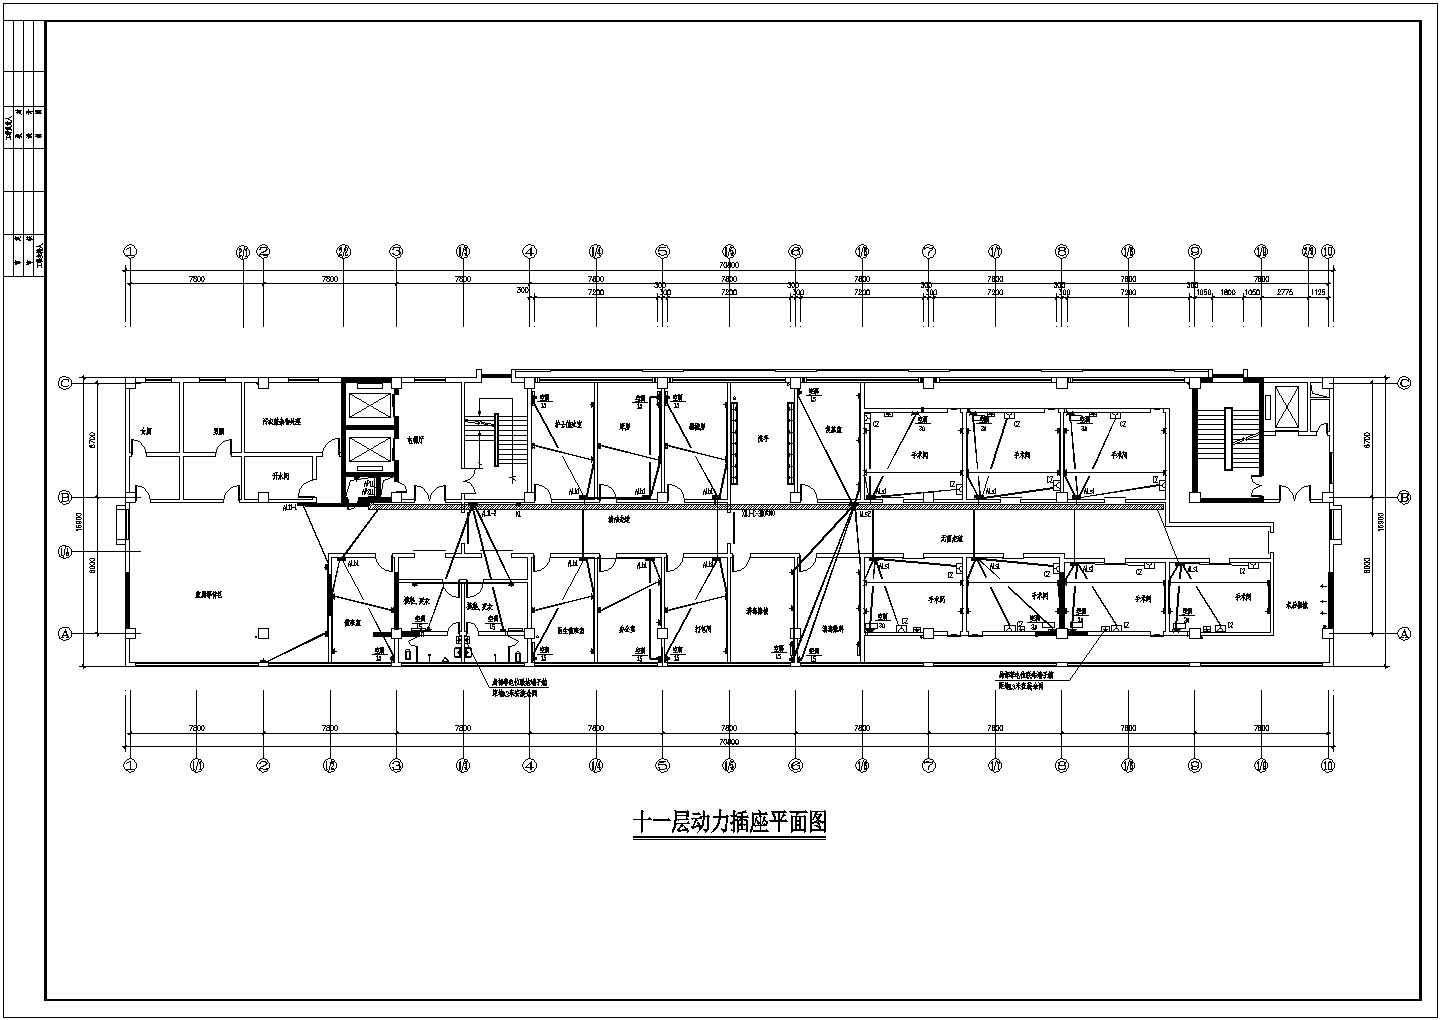 全套医院综合楼建筑电气工程设计图纸-26